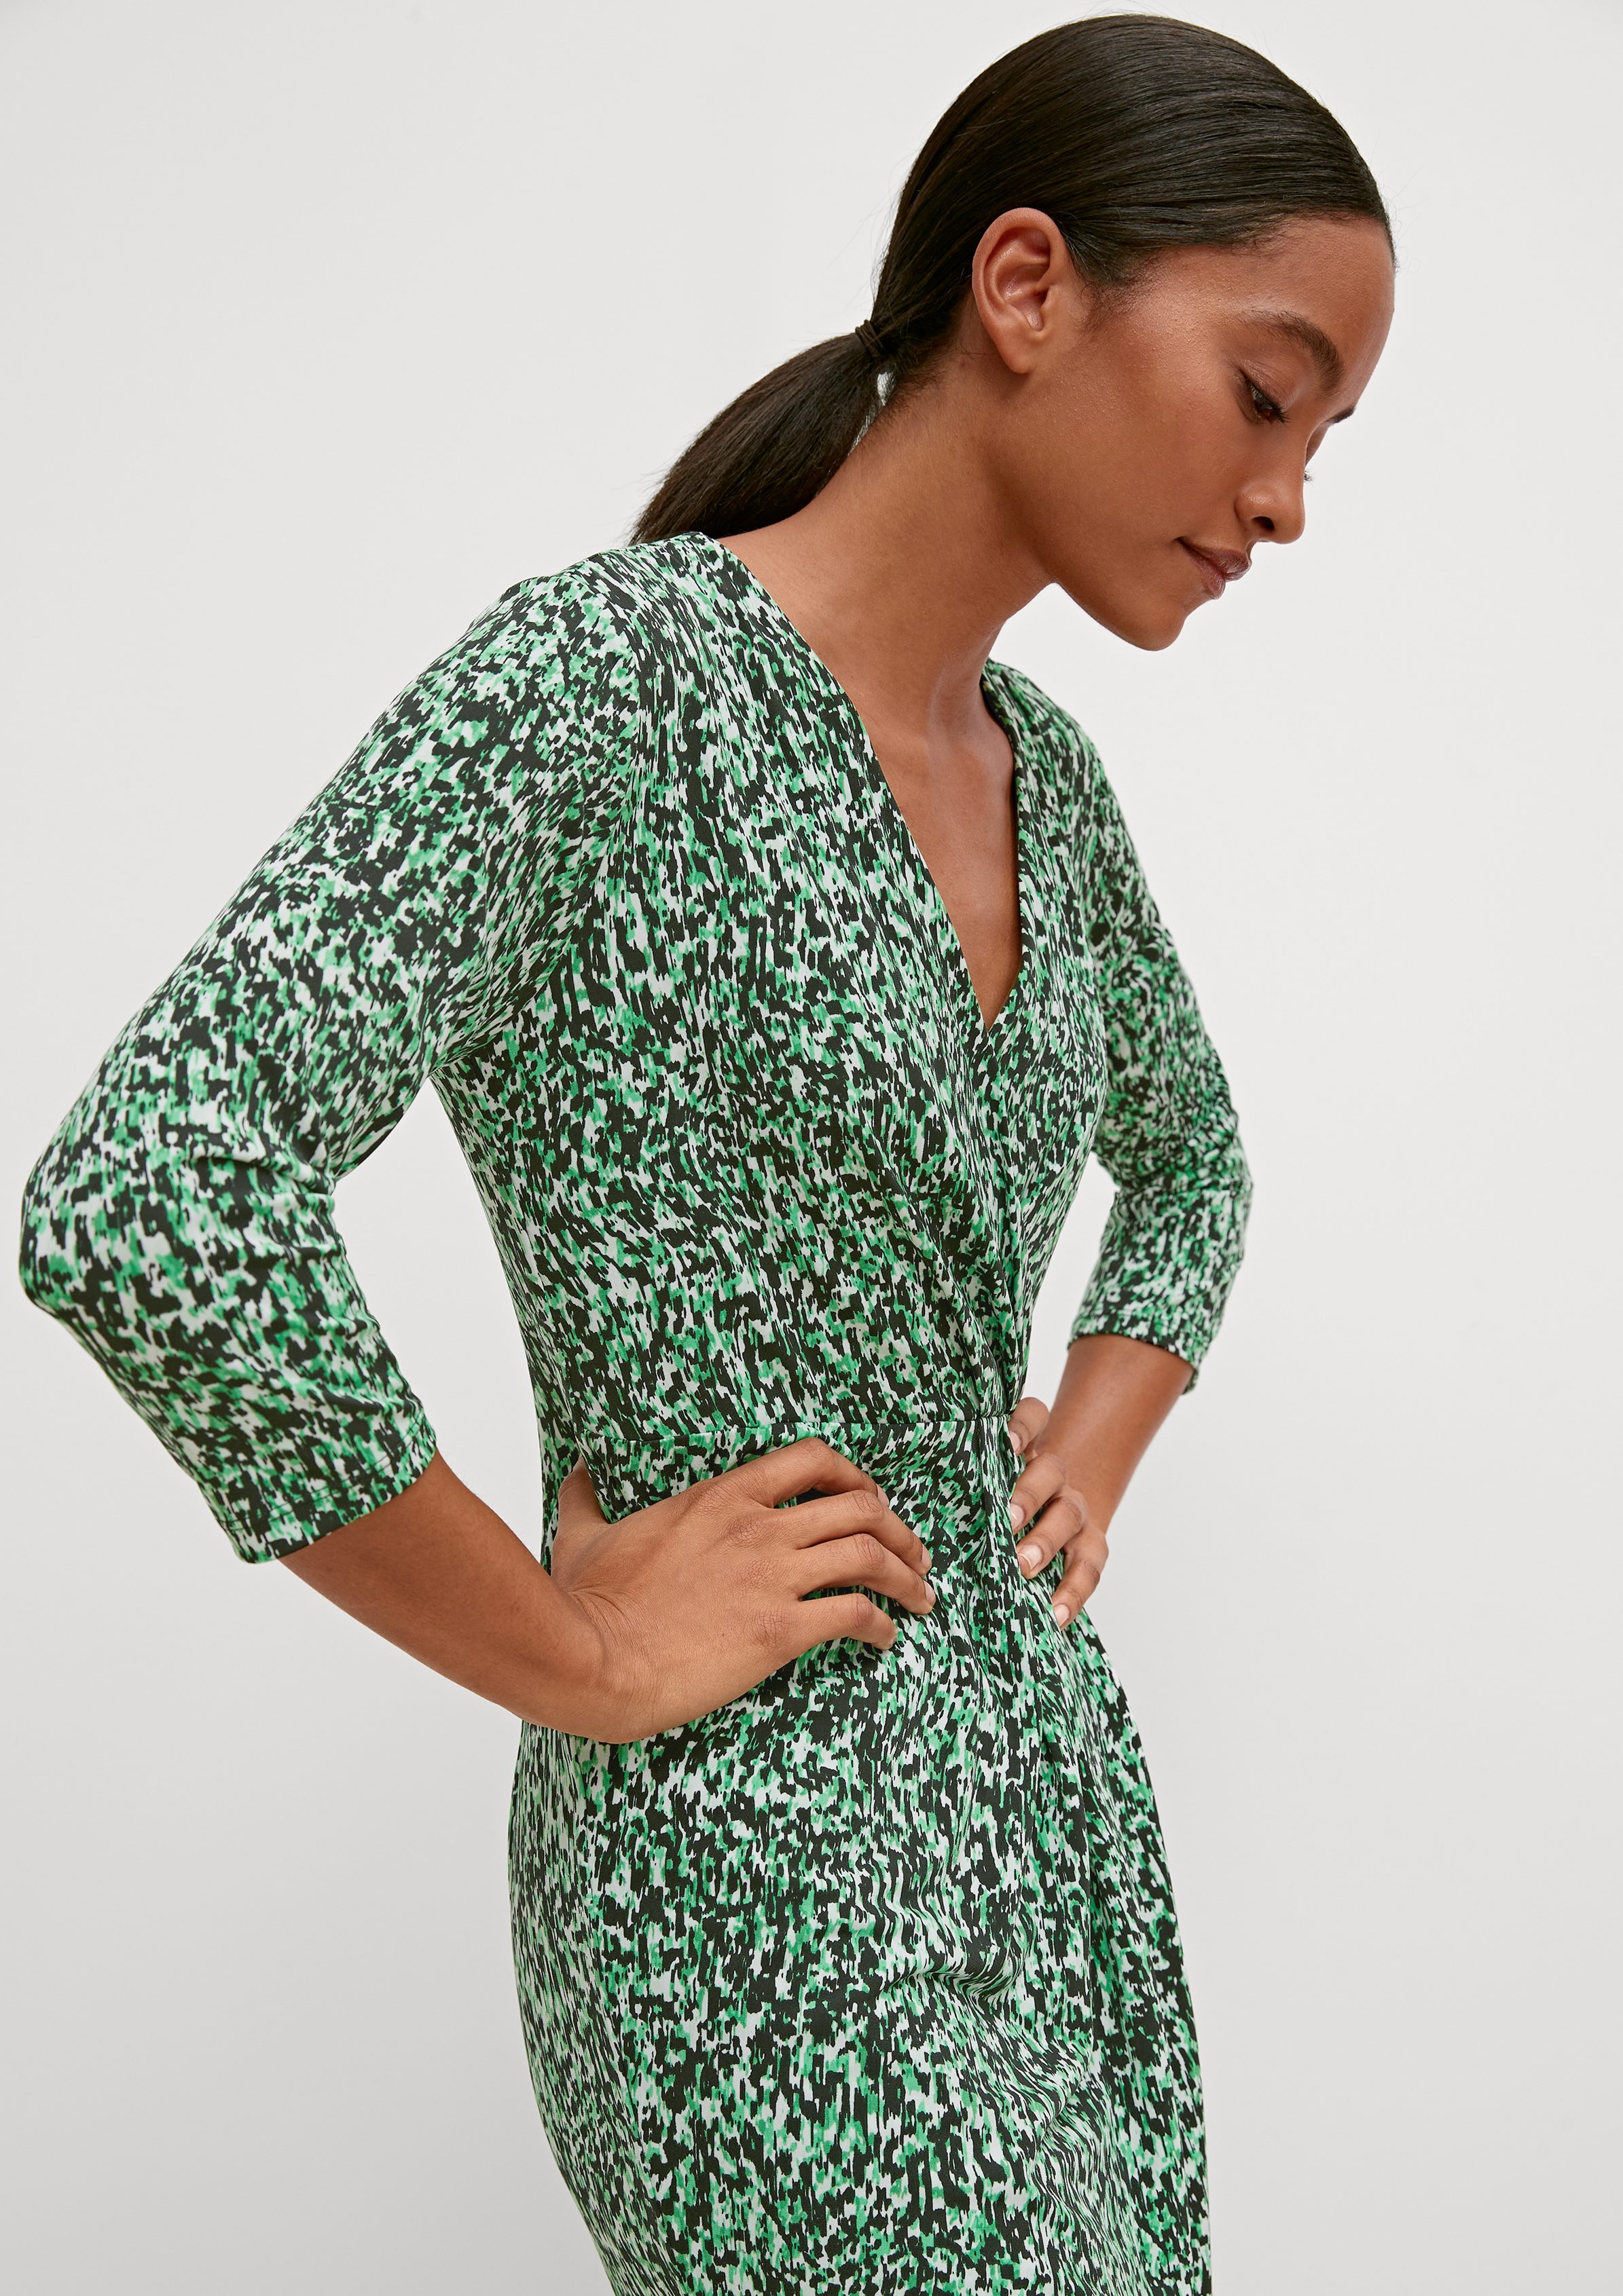 Comma Kleid Minikleid mit Raffung, Raffung grün Ziernaht